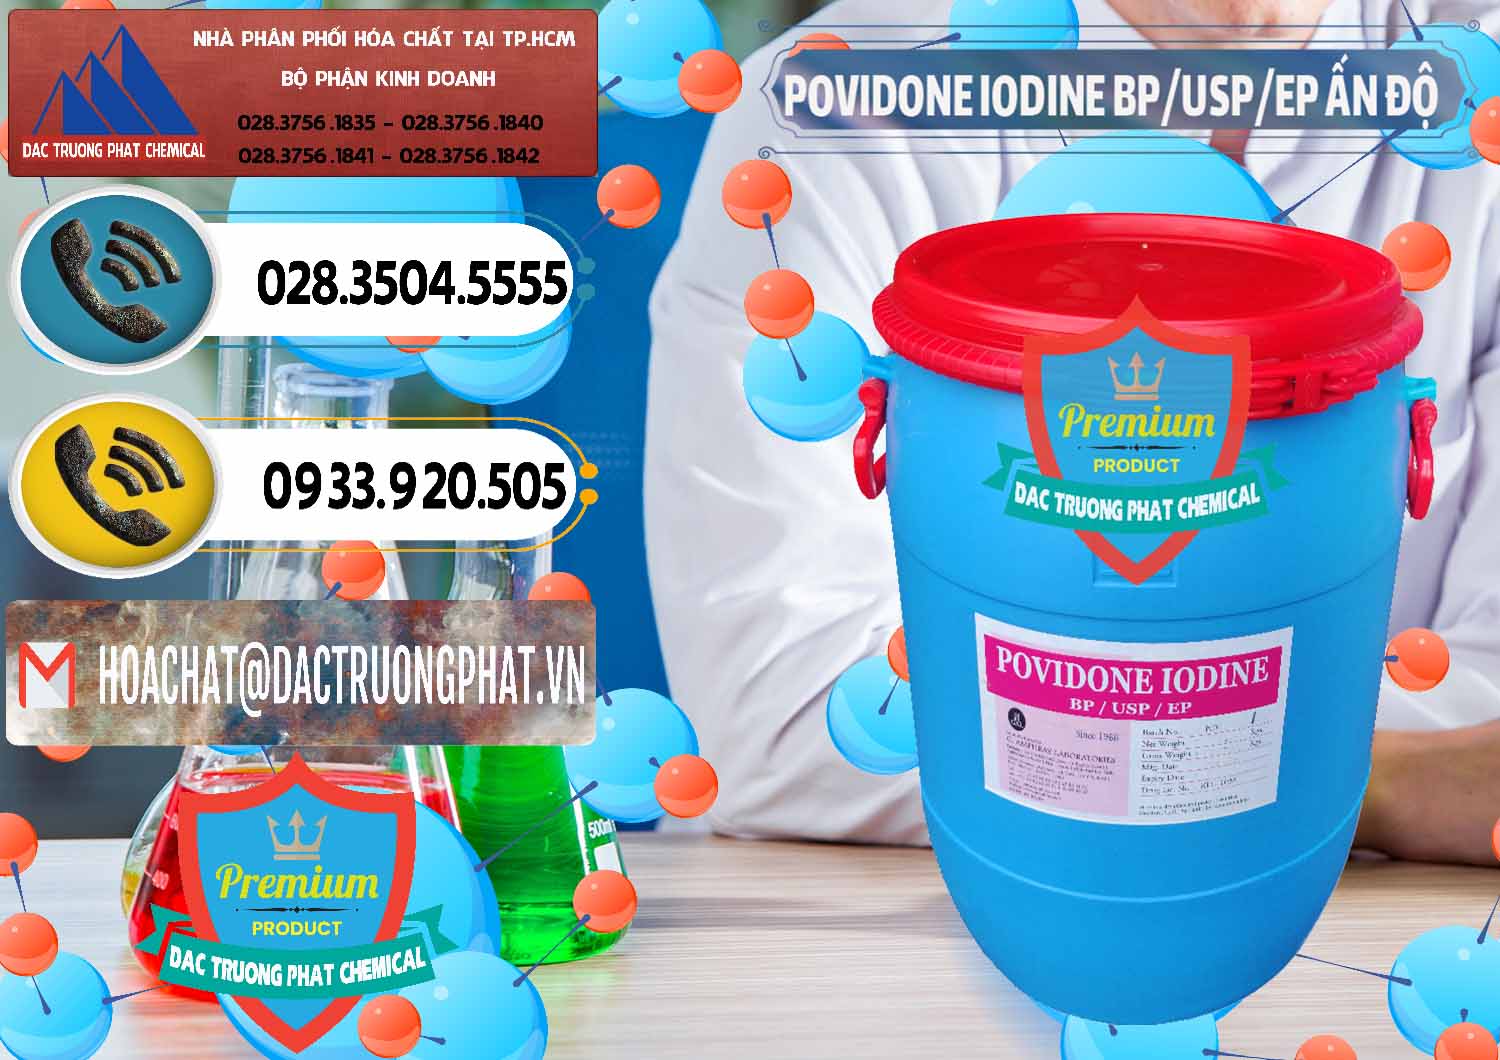 Cty cung cấp & bán Povidone Iodine BP USP EP Ấn Độ India - 0318 - Nơi cung cấp và phân phối hóa chất tại TP.HCM - hoachatdetnhuom.vn